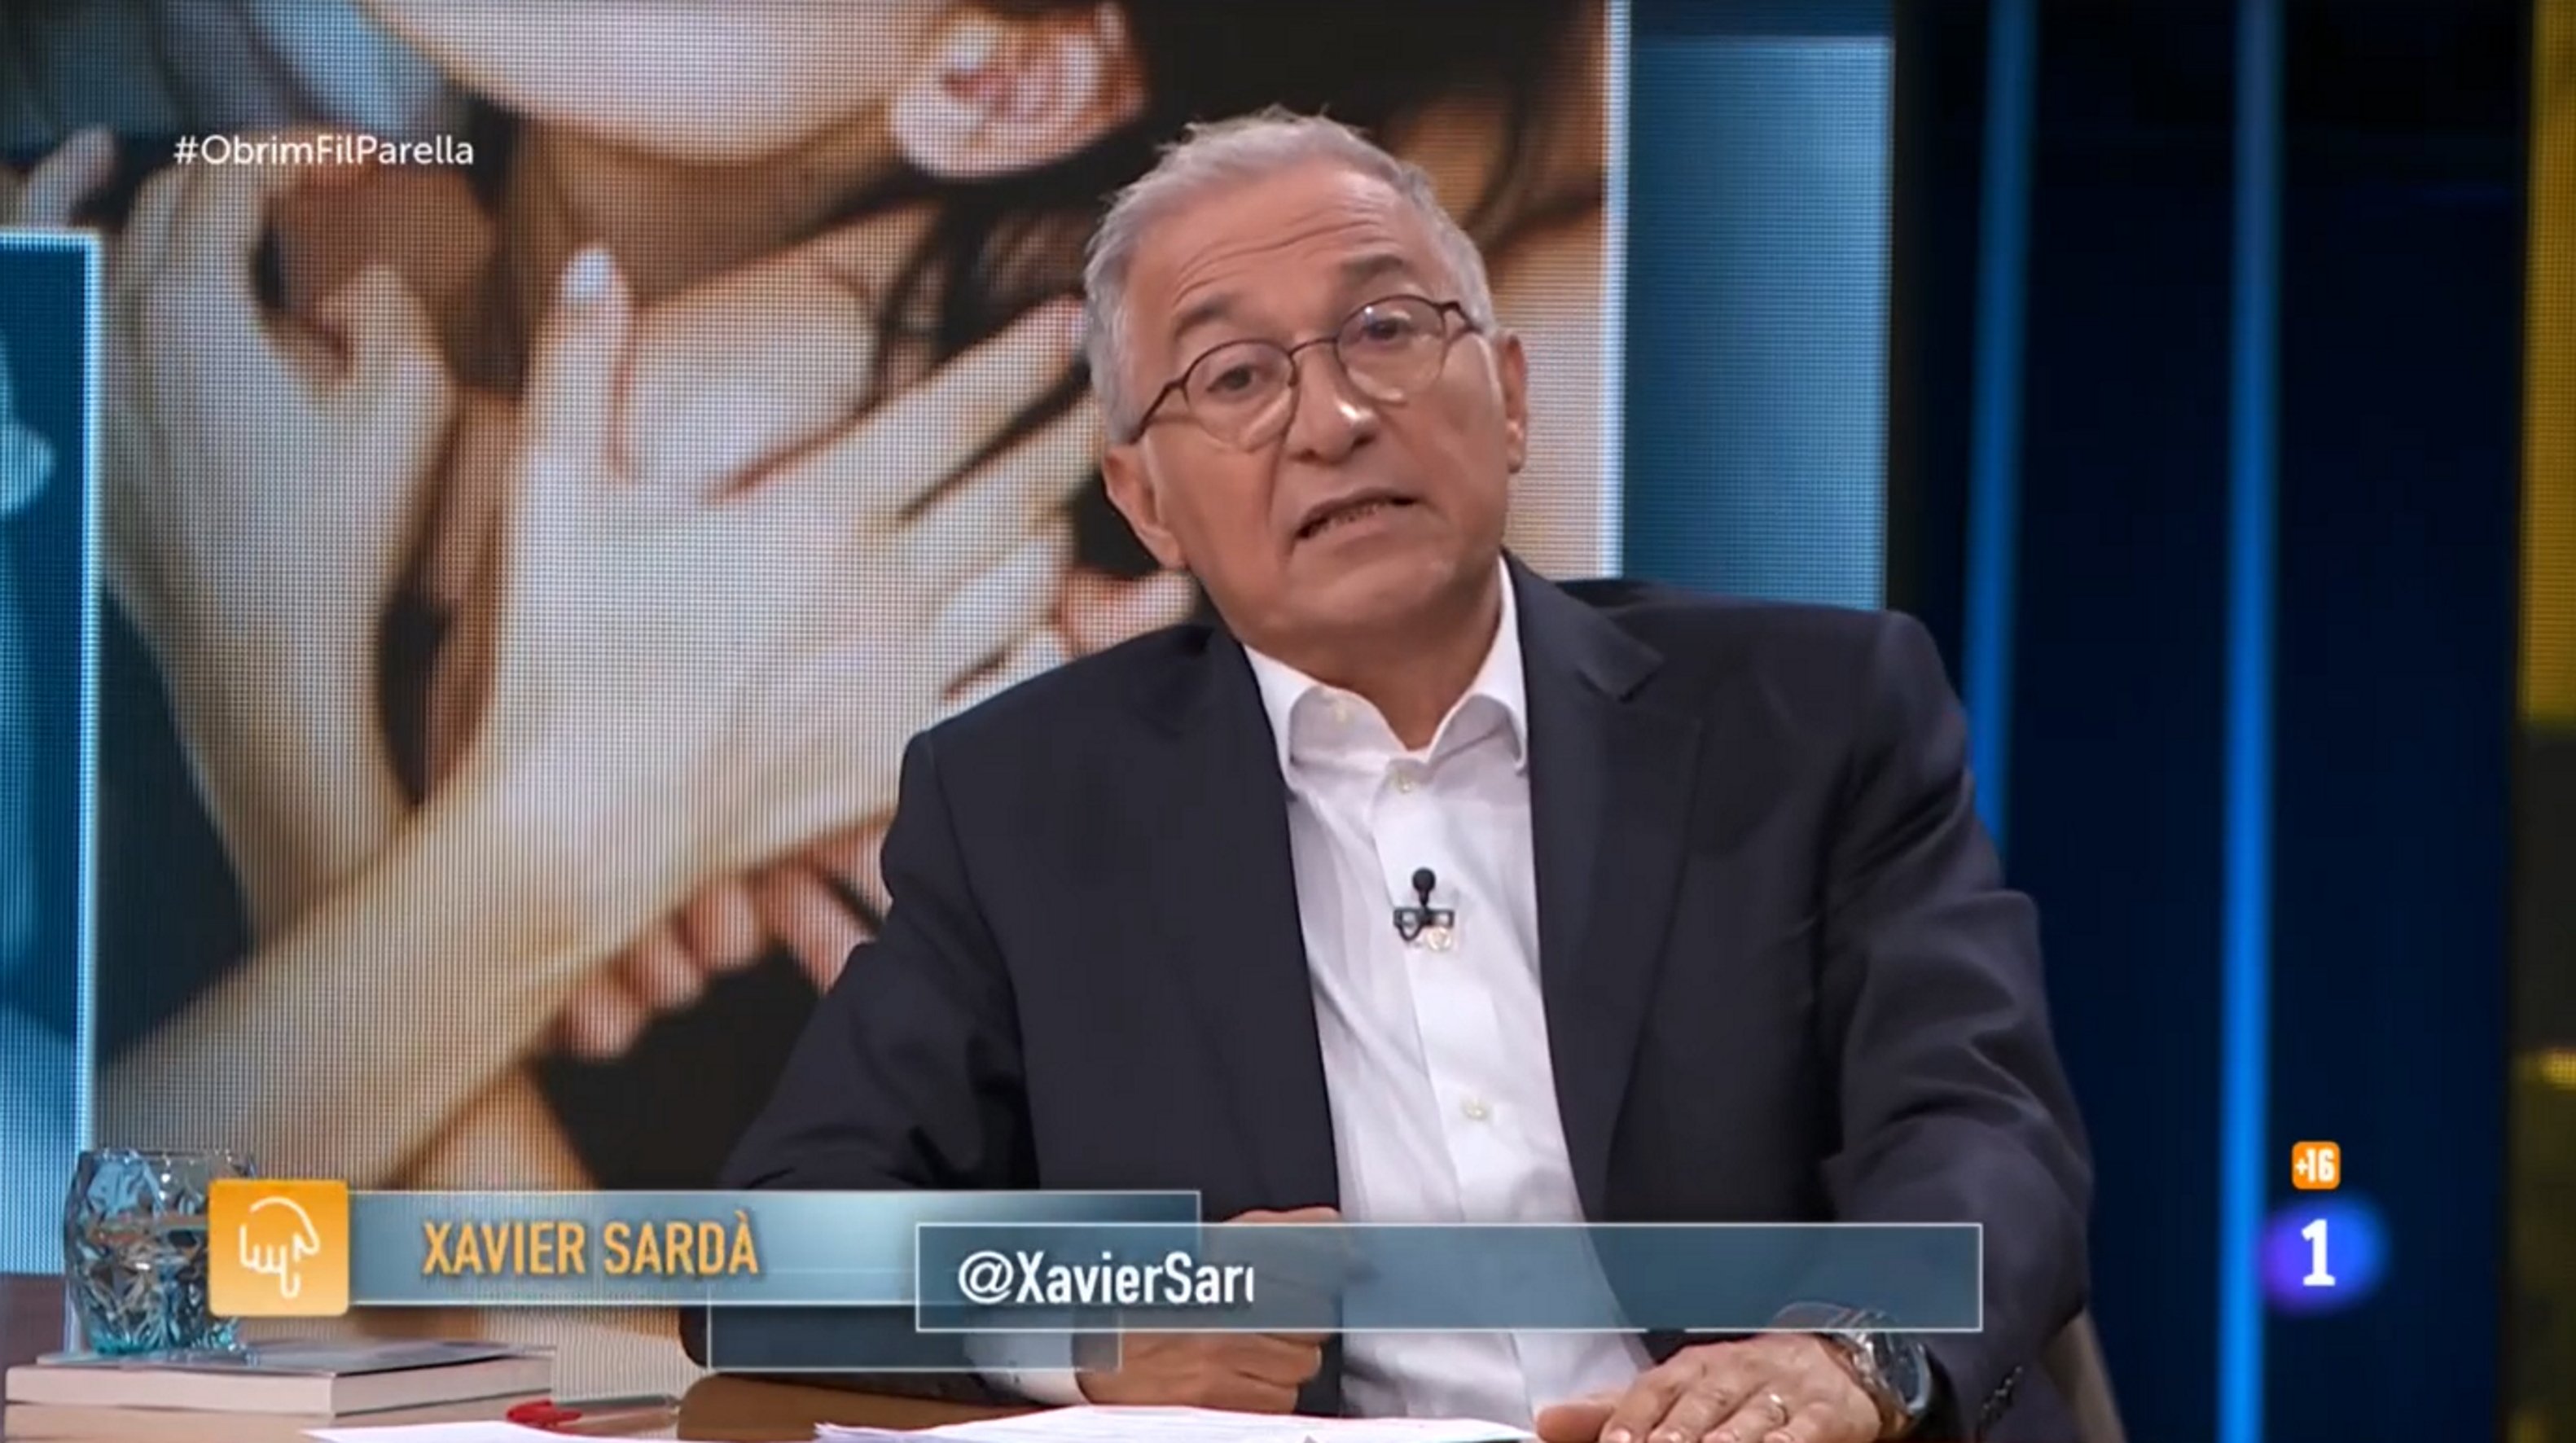 Xavier Sardà, fuera de TVE. Fulminan 'Obrim Fil' después de 2 temporadas